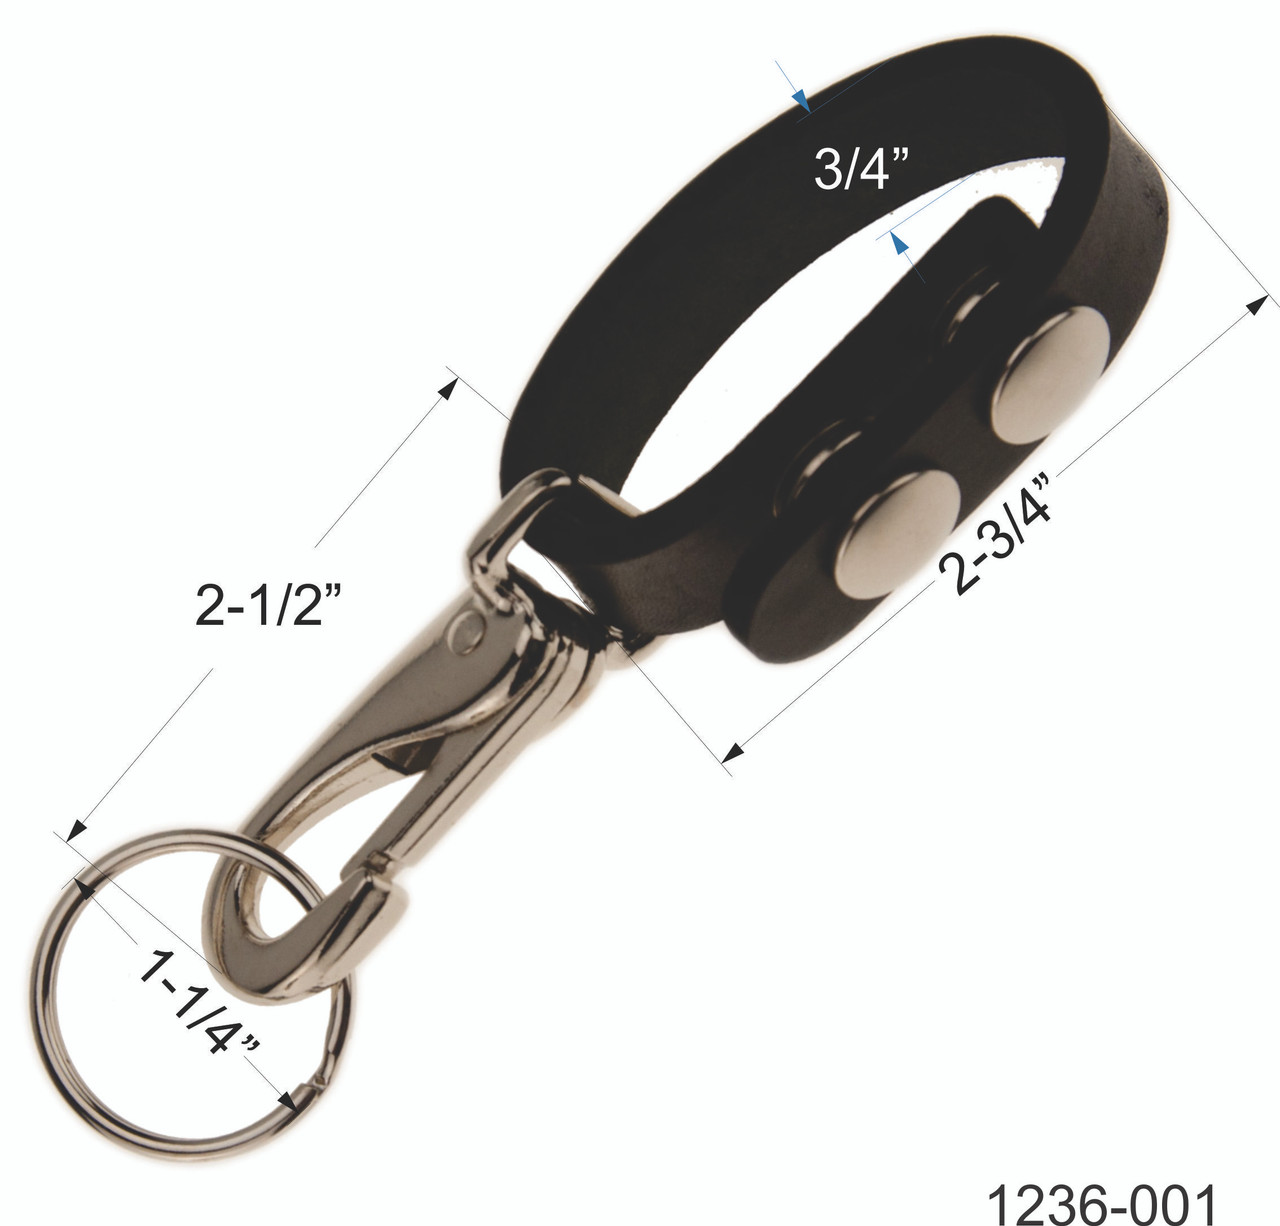 Double Loop Metal Strap Adjuster 1.5 inch Black 20112-13